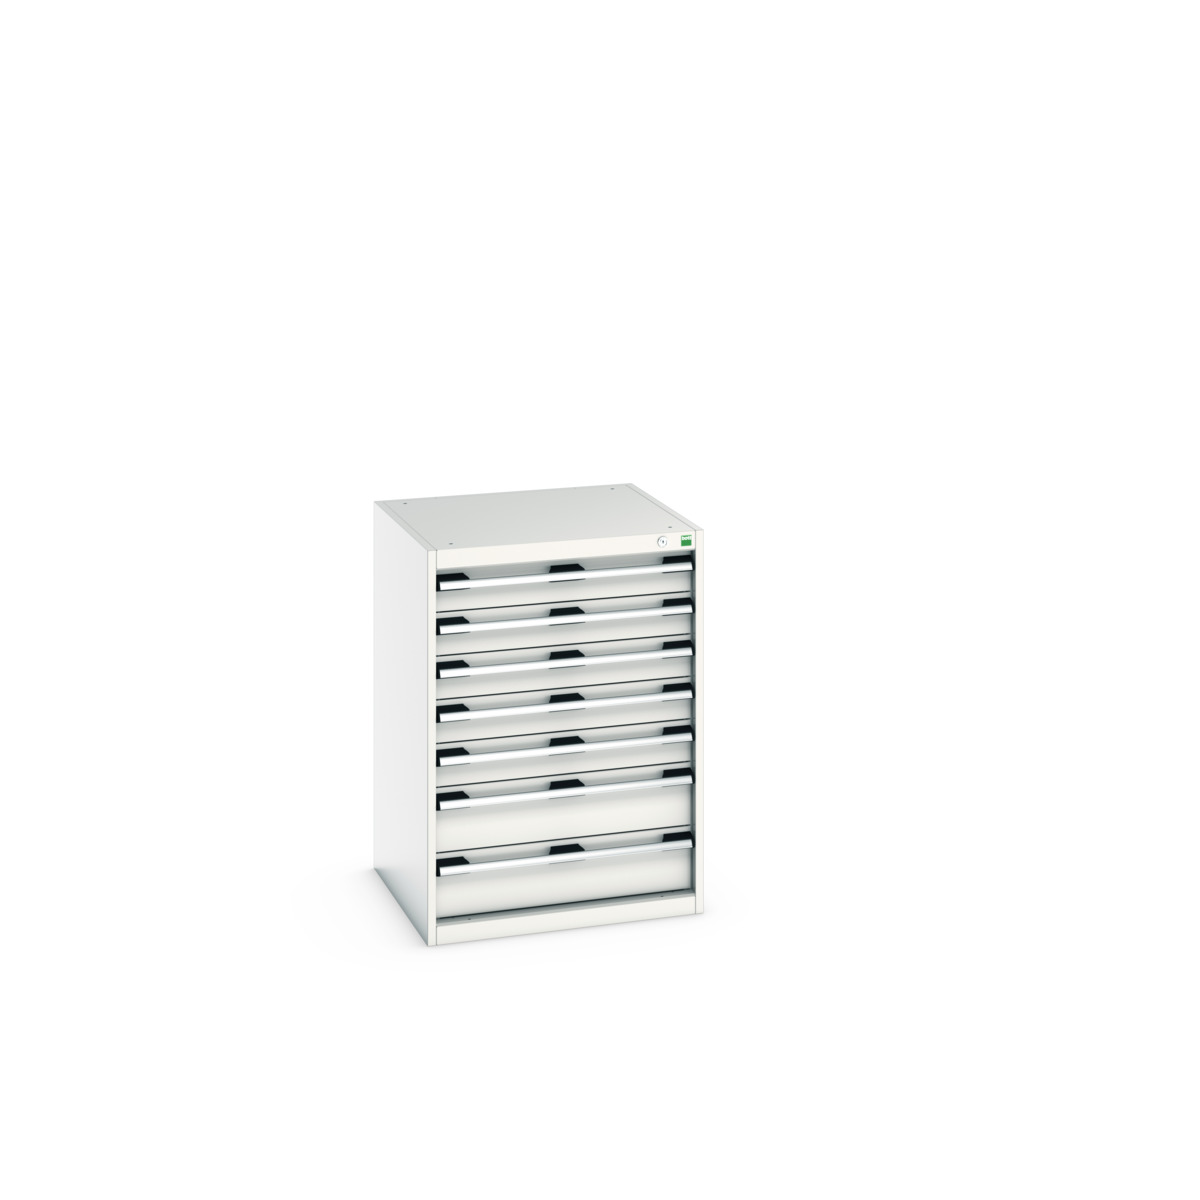 40019051.16V - cubio drawer cabinet